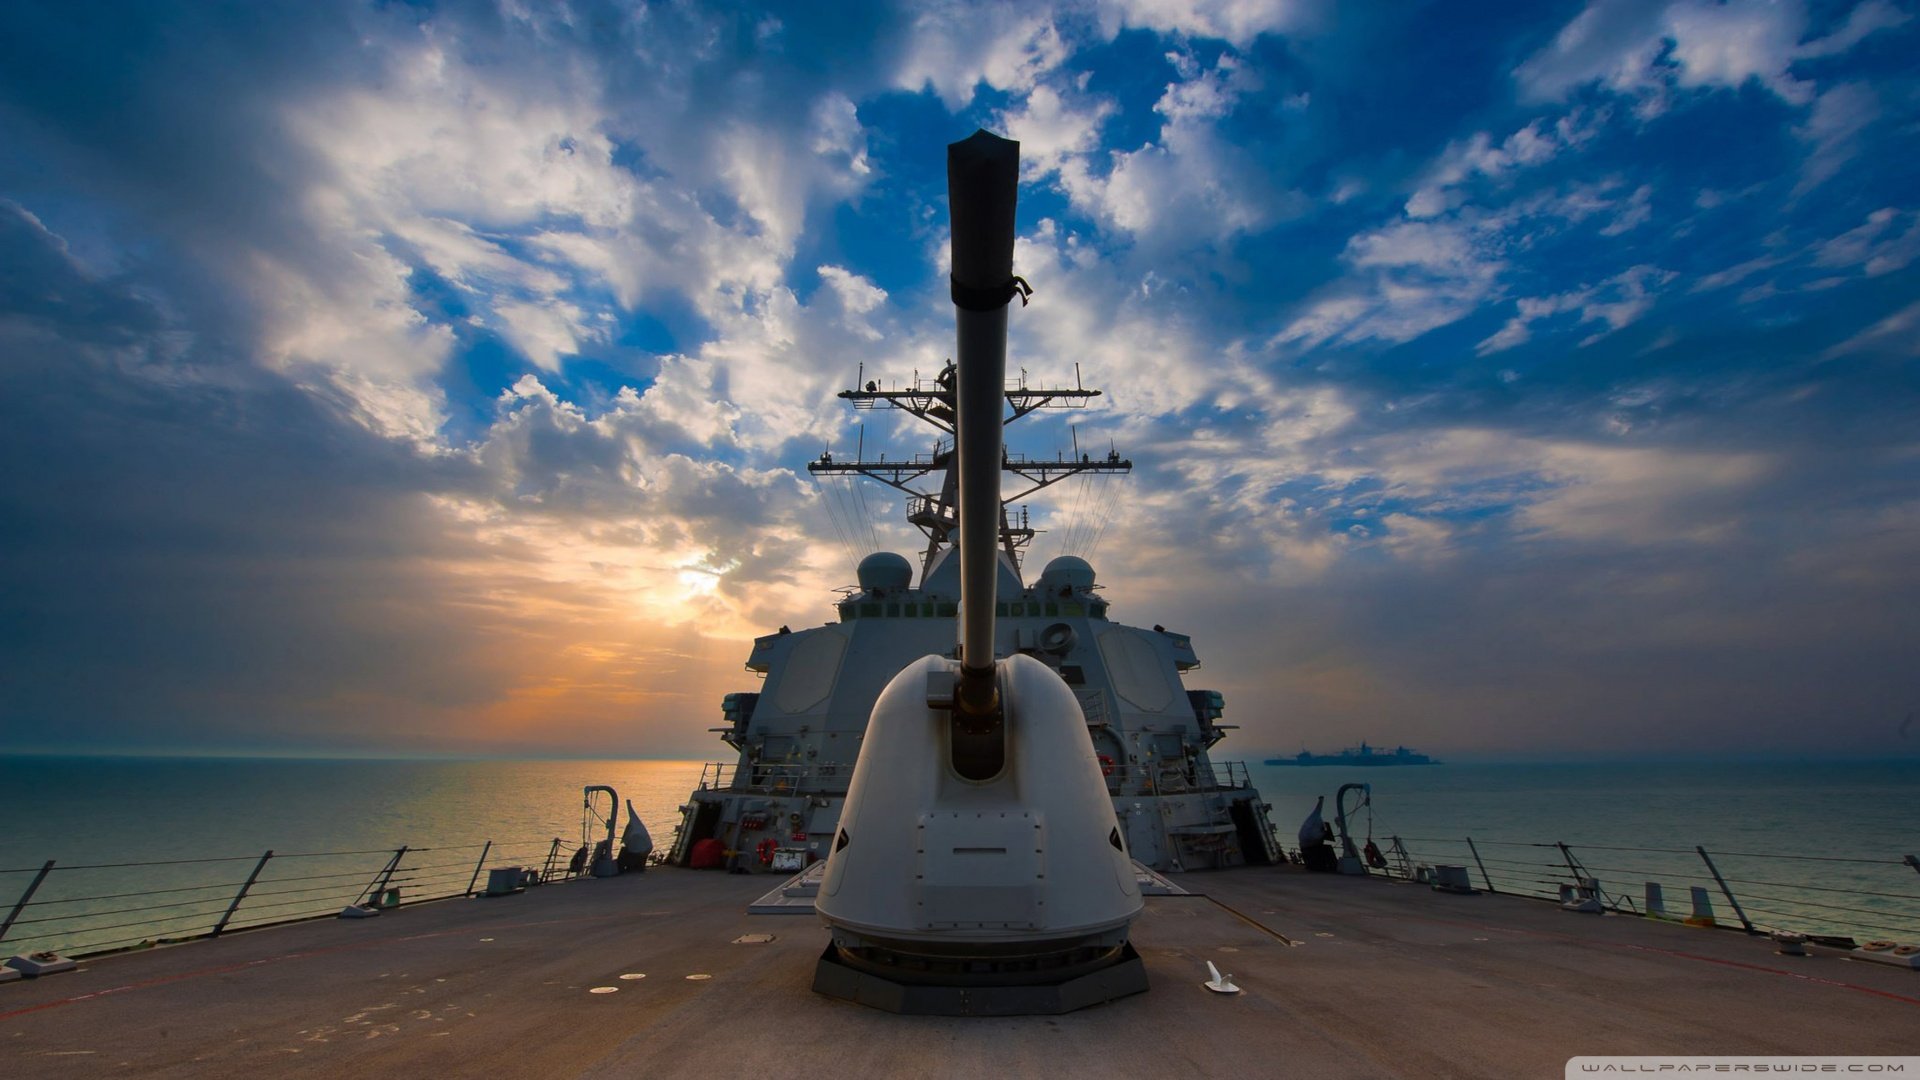 fond d'écran marine hd,bataille navale,ciel,véhicule,destructeur,navire de guerre